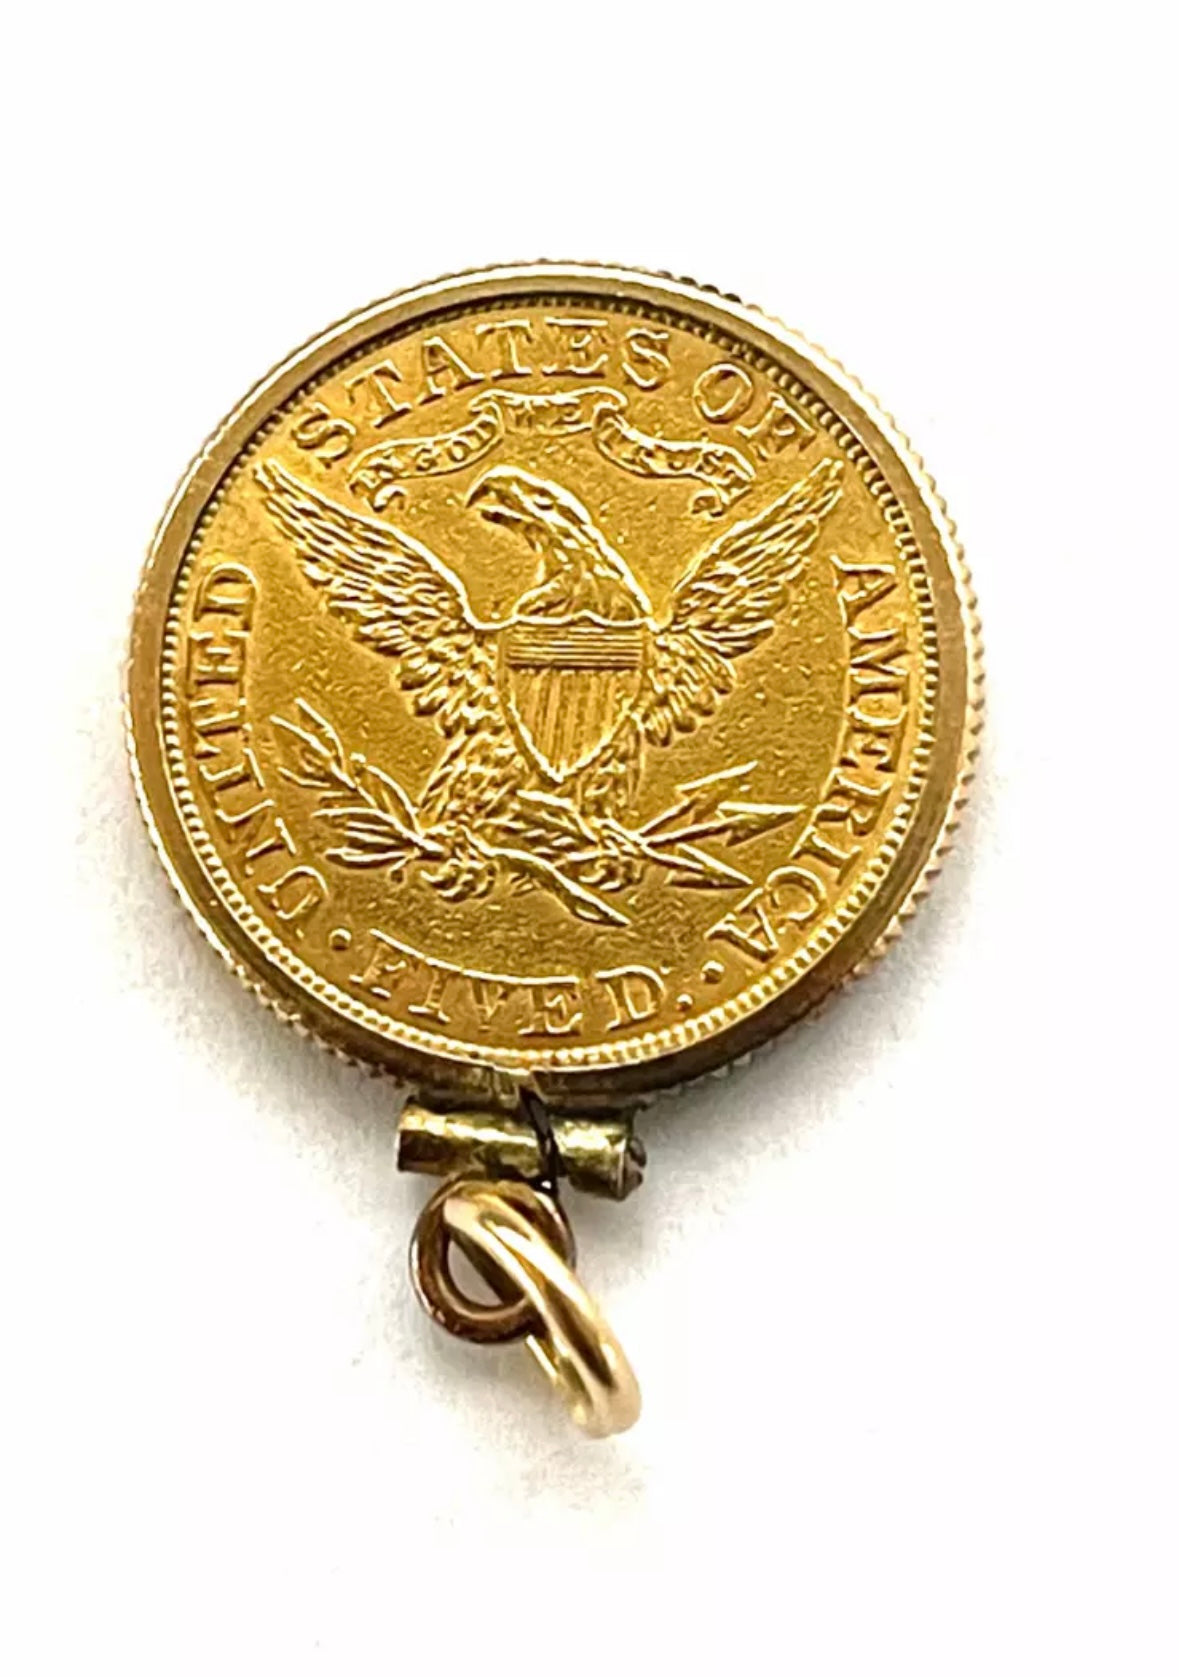 1880 Liberty Gold Half Eagle $5 Coin - Rare Gold Coin Pendant